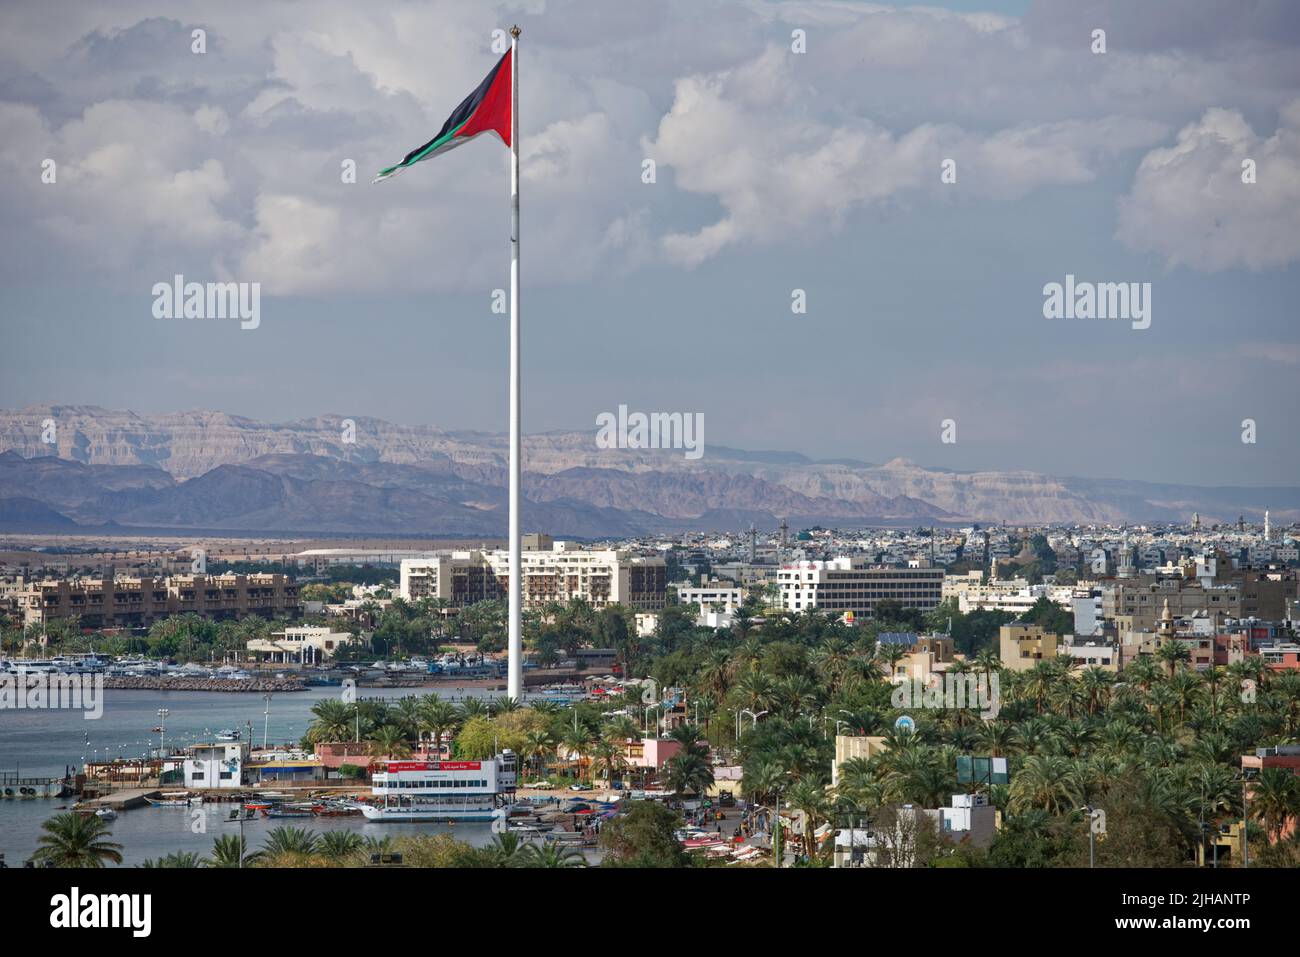 Bandiera nazionale che sventola sul porto di Aquaba, Giordania, contro un paesaggio urbano Foto Stock